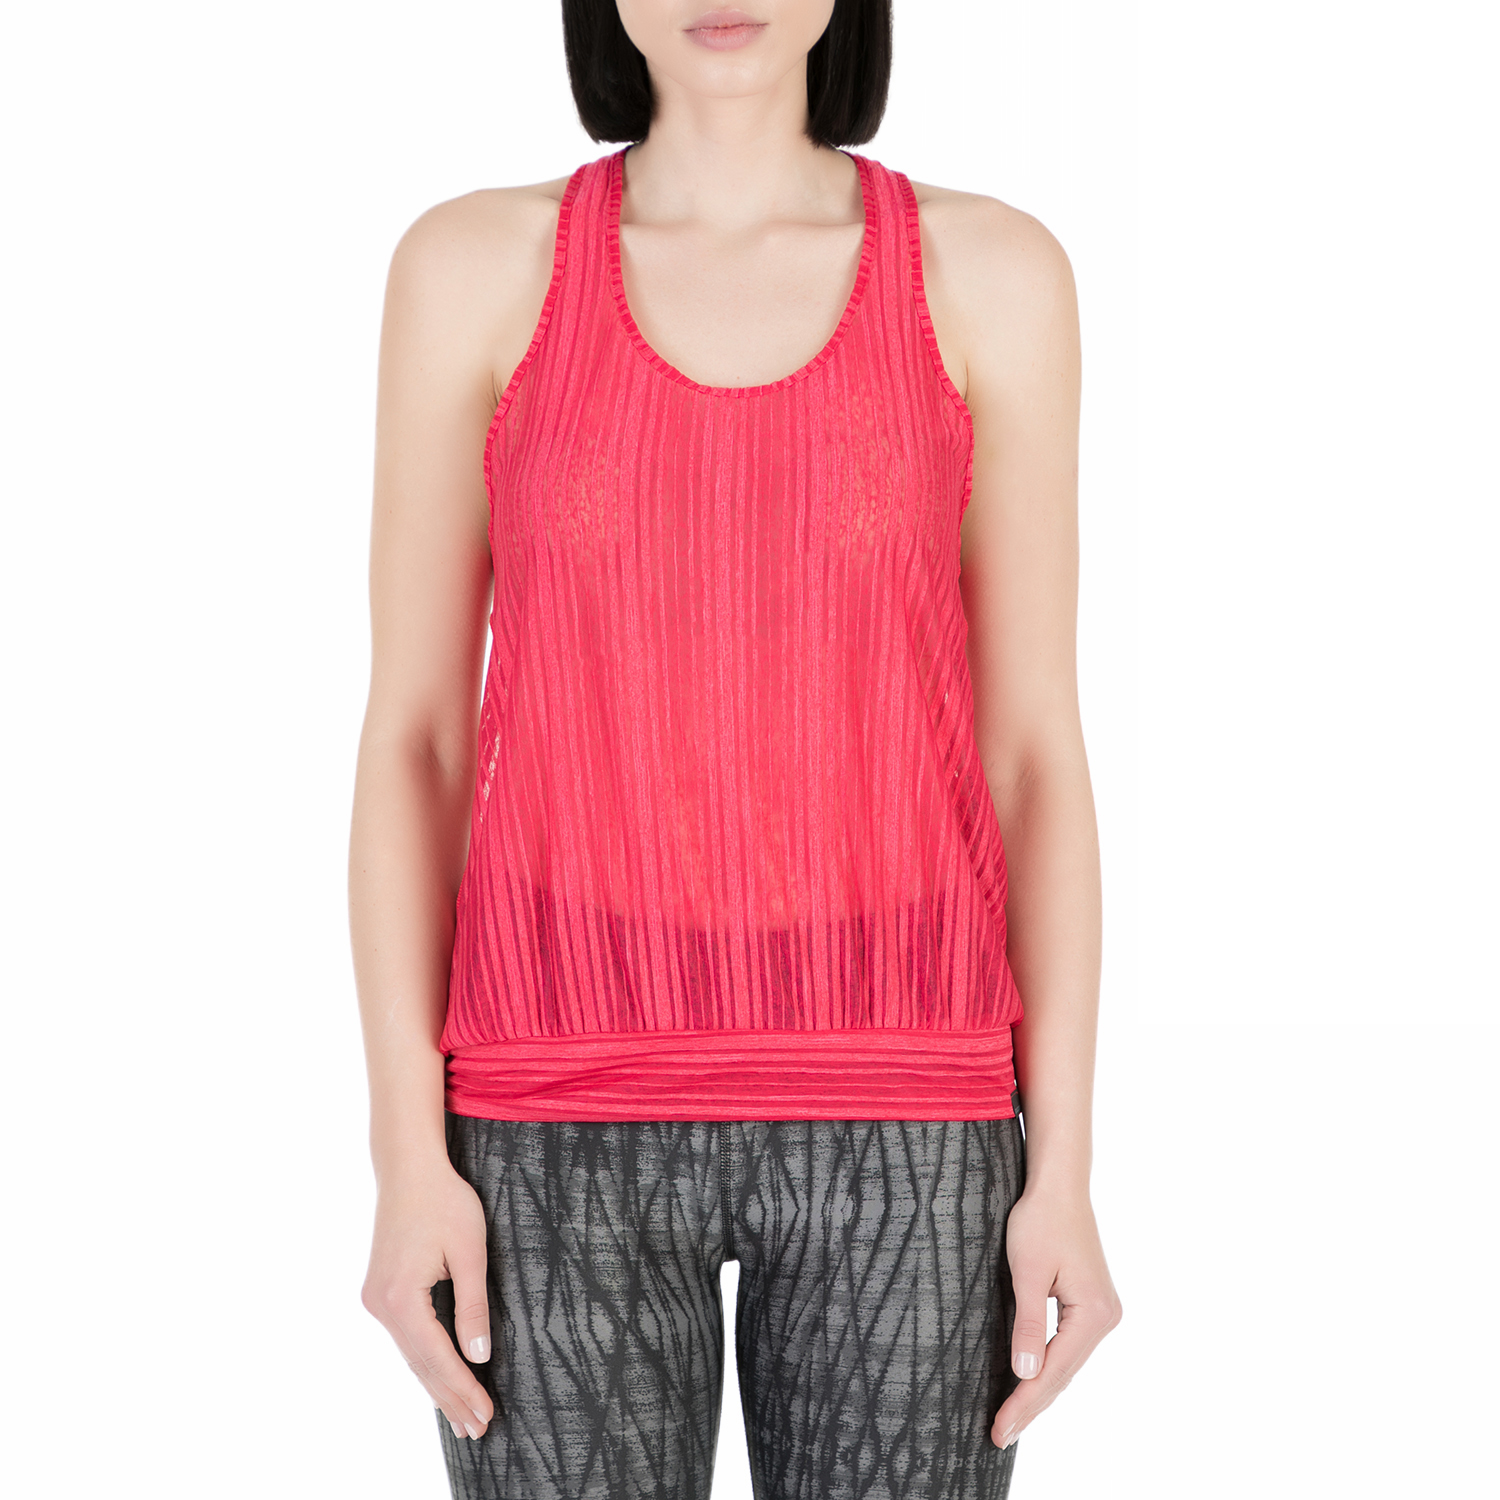 Γυναικεία/Ρούχα/Αθλητικά/T-shirt-Τοπ SAUCONY - Γυναικείο αθλητικό φανελάκι Saucony BREEZE TANK κόκκινο